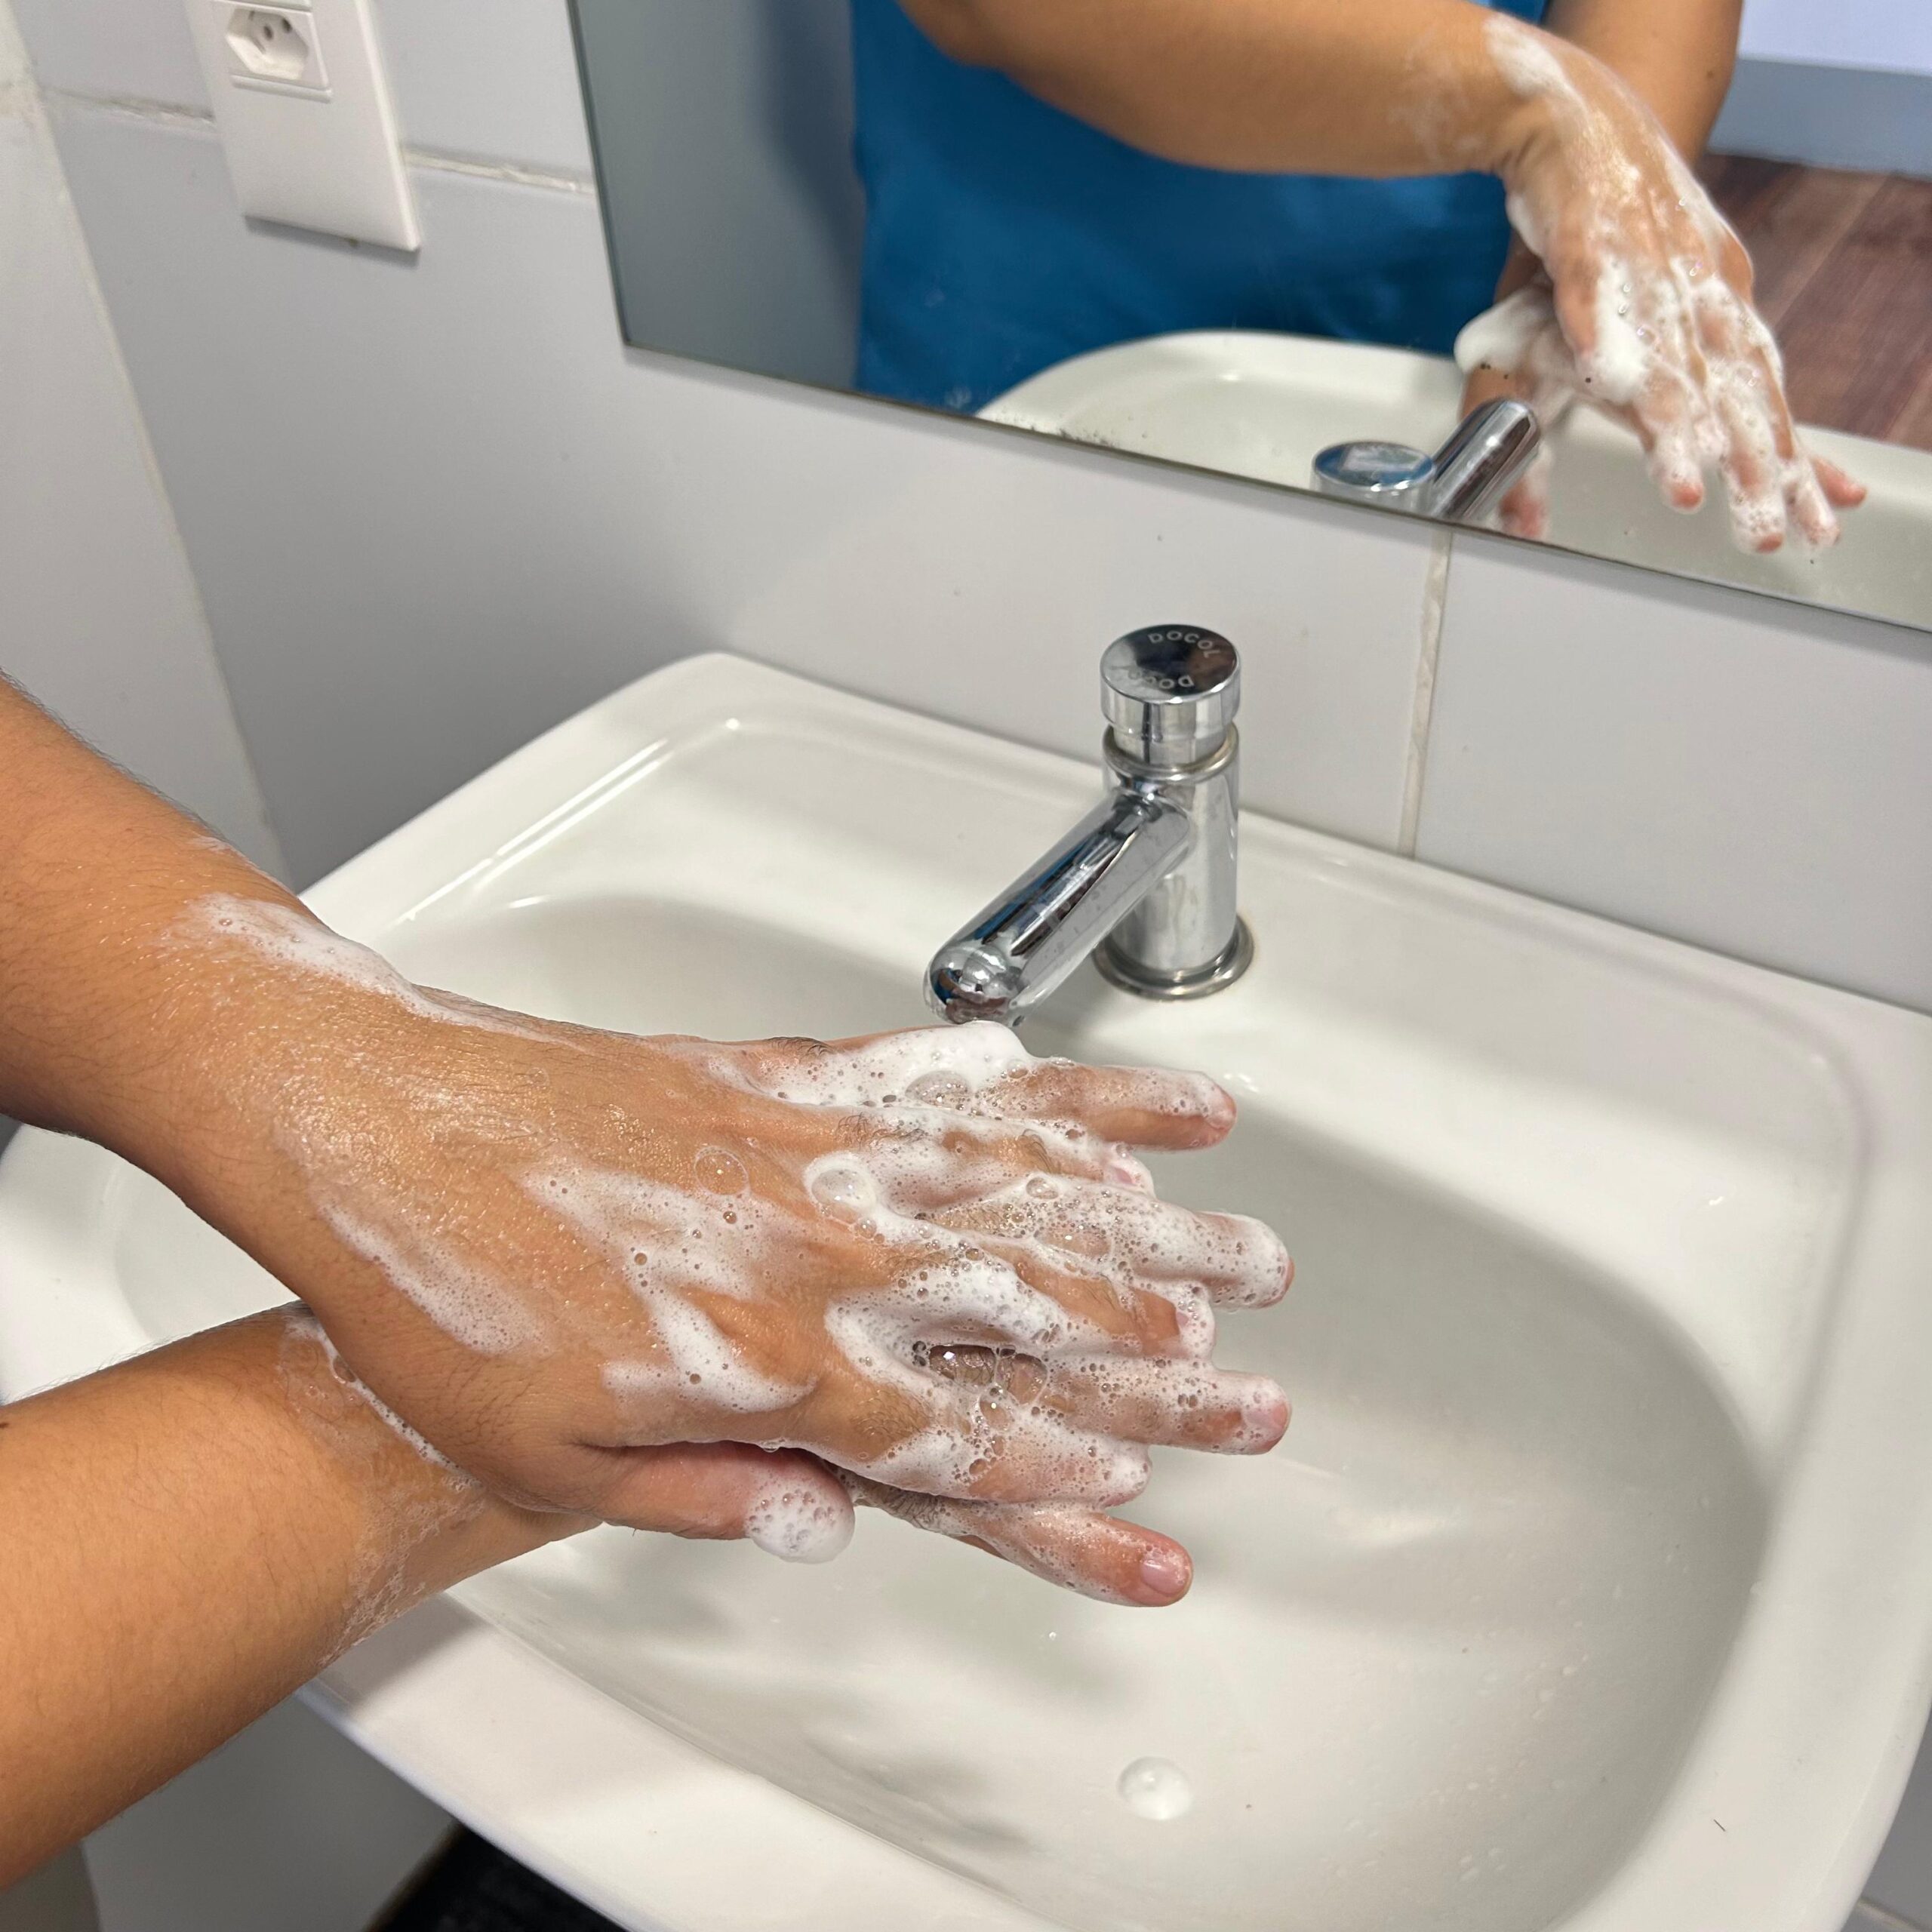 Lavar as mãos com água, sabão, além de fazer uso de álcool 70% são os principais mecanismos para manter as mãos limpas.